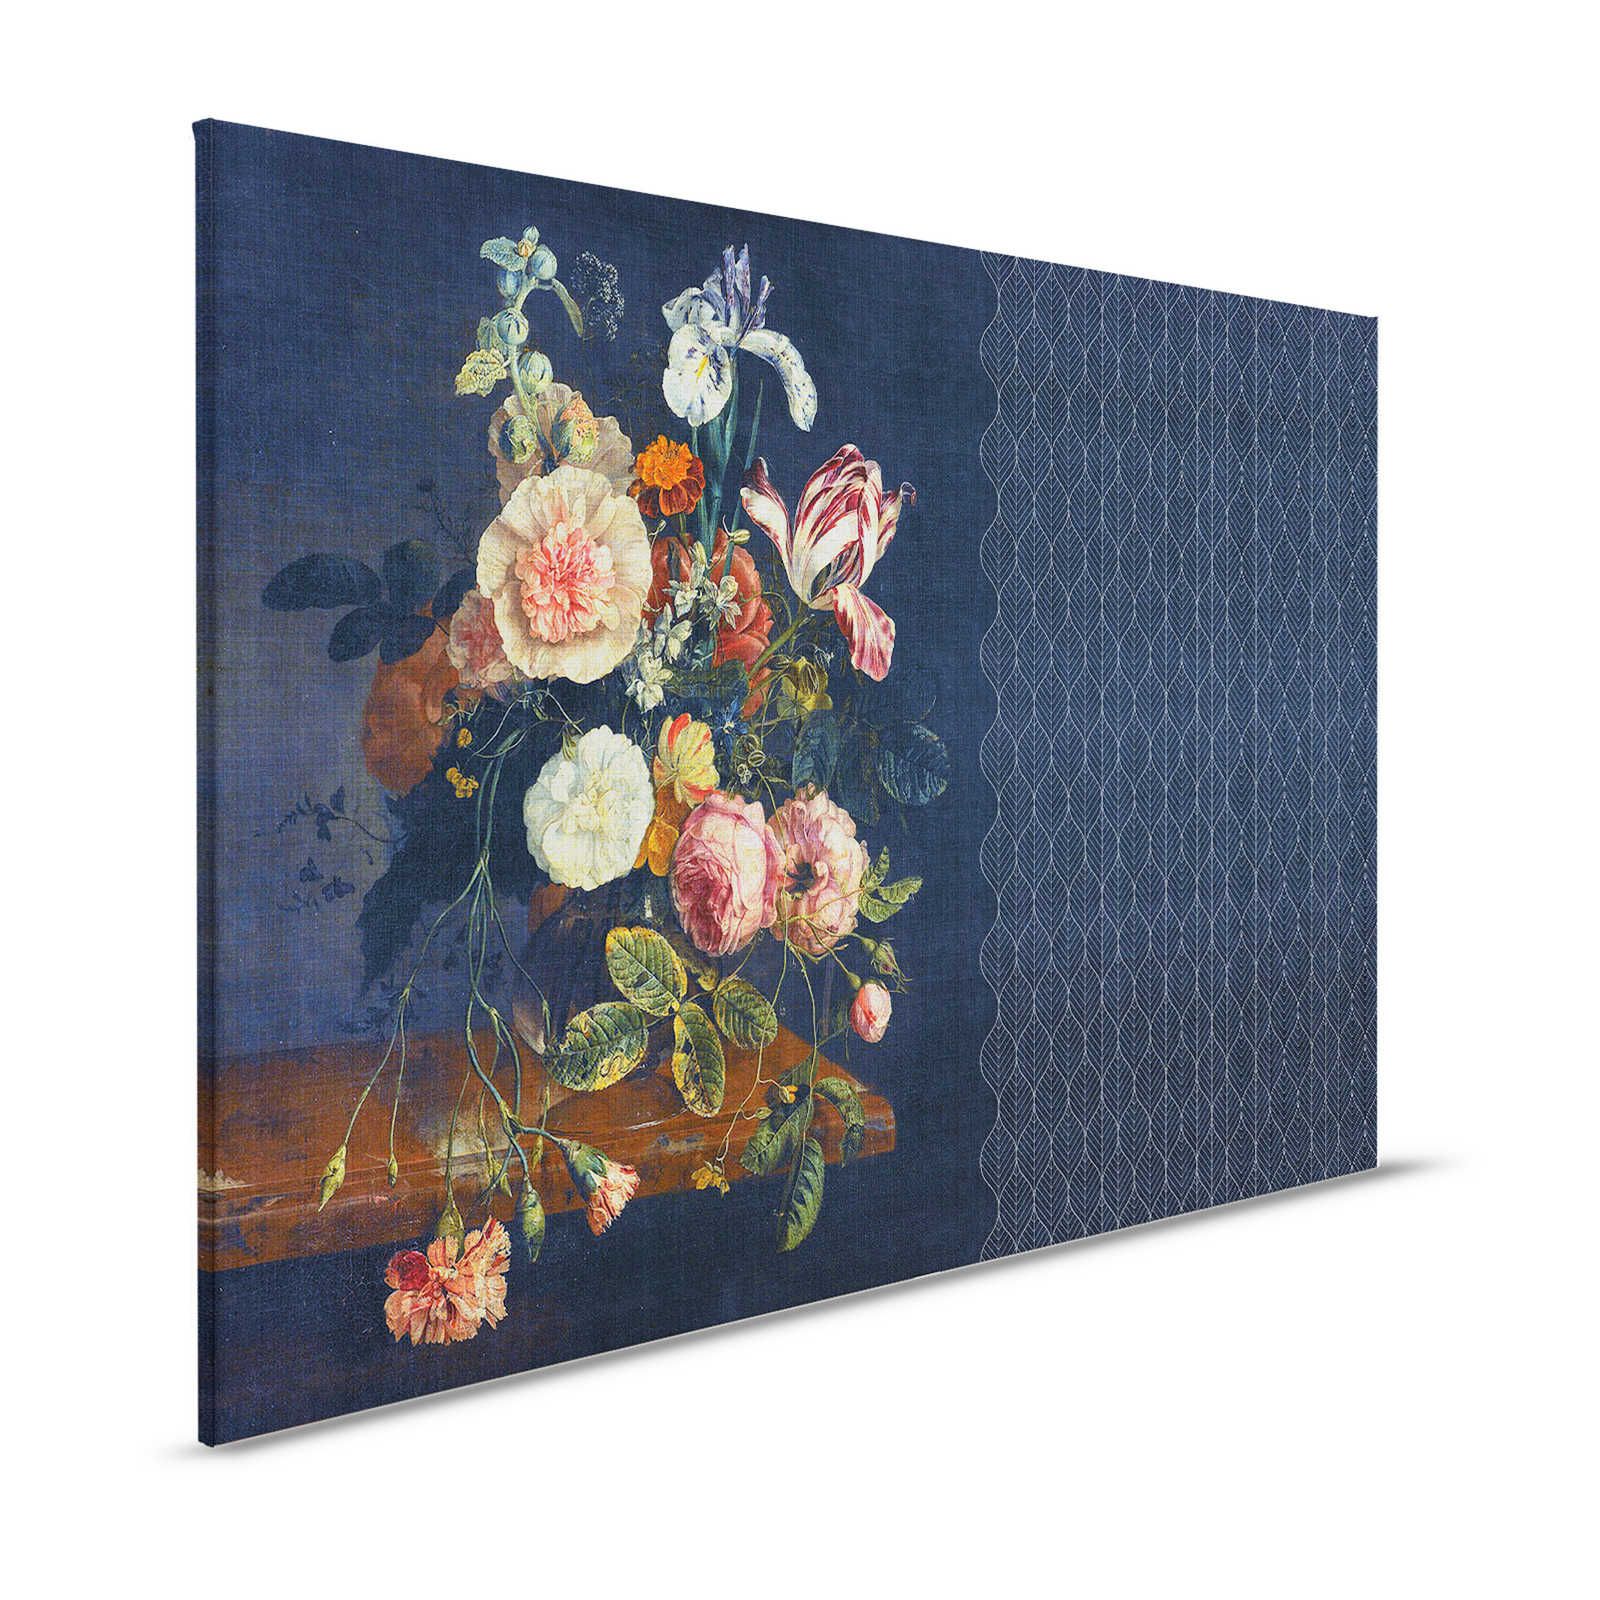 Cortina 2 - Dunkelblaues Leinwandbild Art Deko Muster mit Blumenstrauß – 1,20 m x 0,80 m
